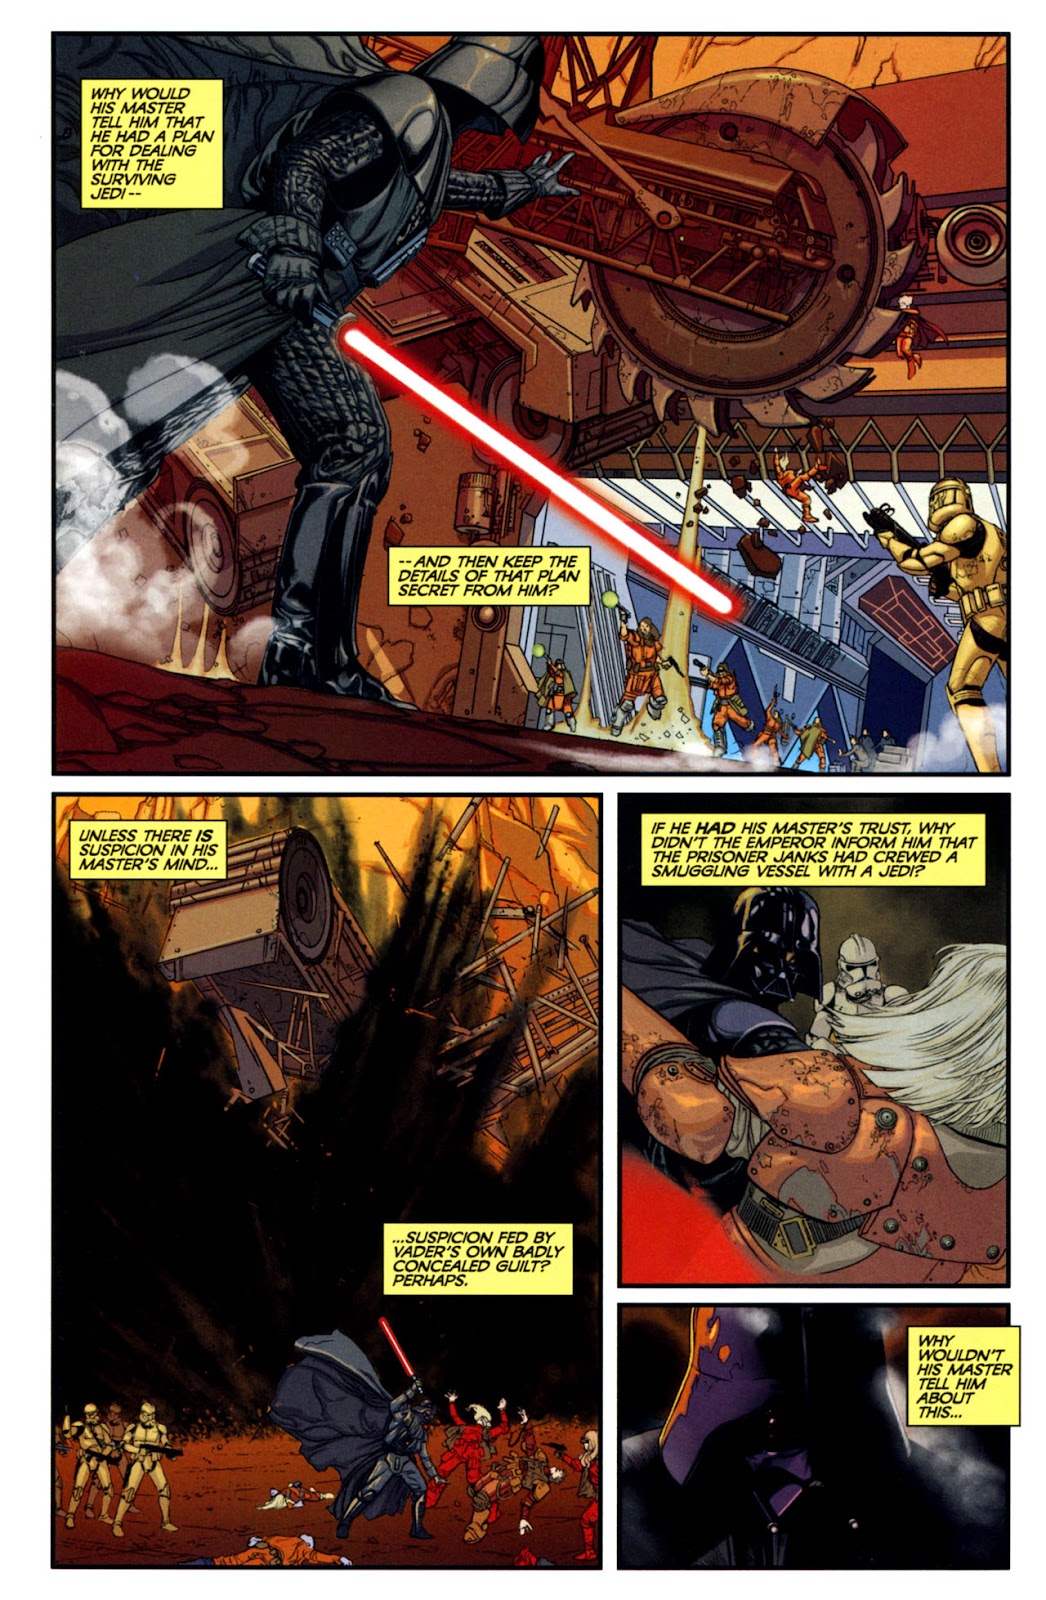 Star Wars: Dark Times issue 14 - Blue Harvest, Part 2 - Page 5